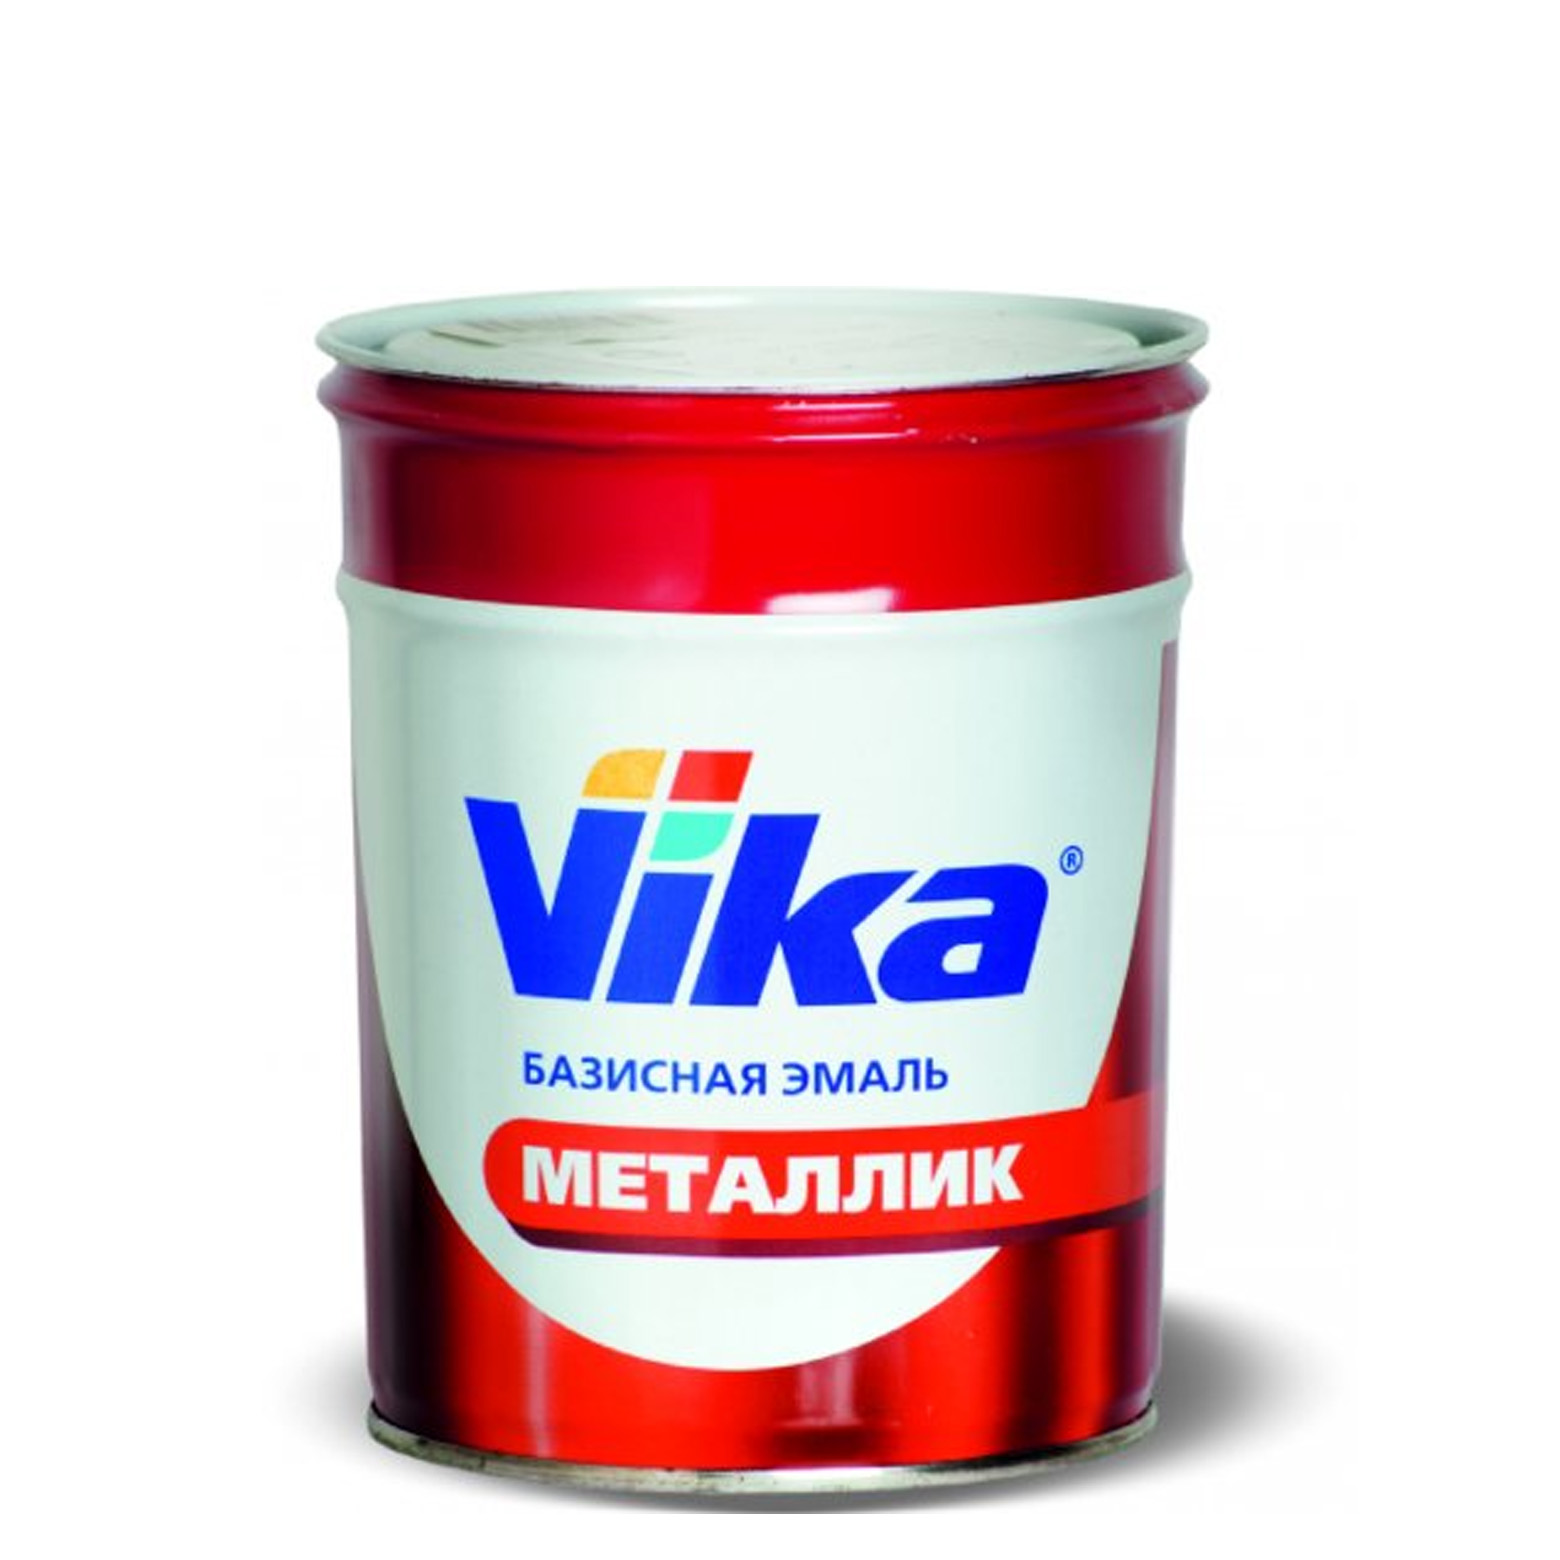 Фото 1 - Автоэмаль Металлик, цвет 650 цвет Совиньон, профессиональная базовая, - 0,9 кг Vika/Вика.